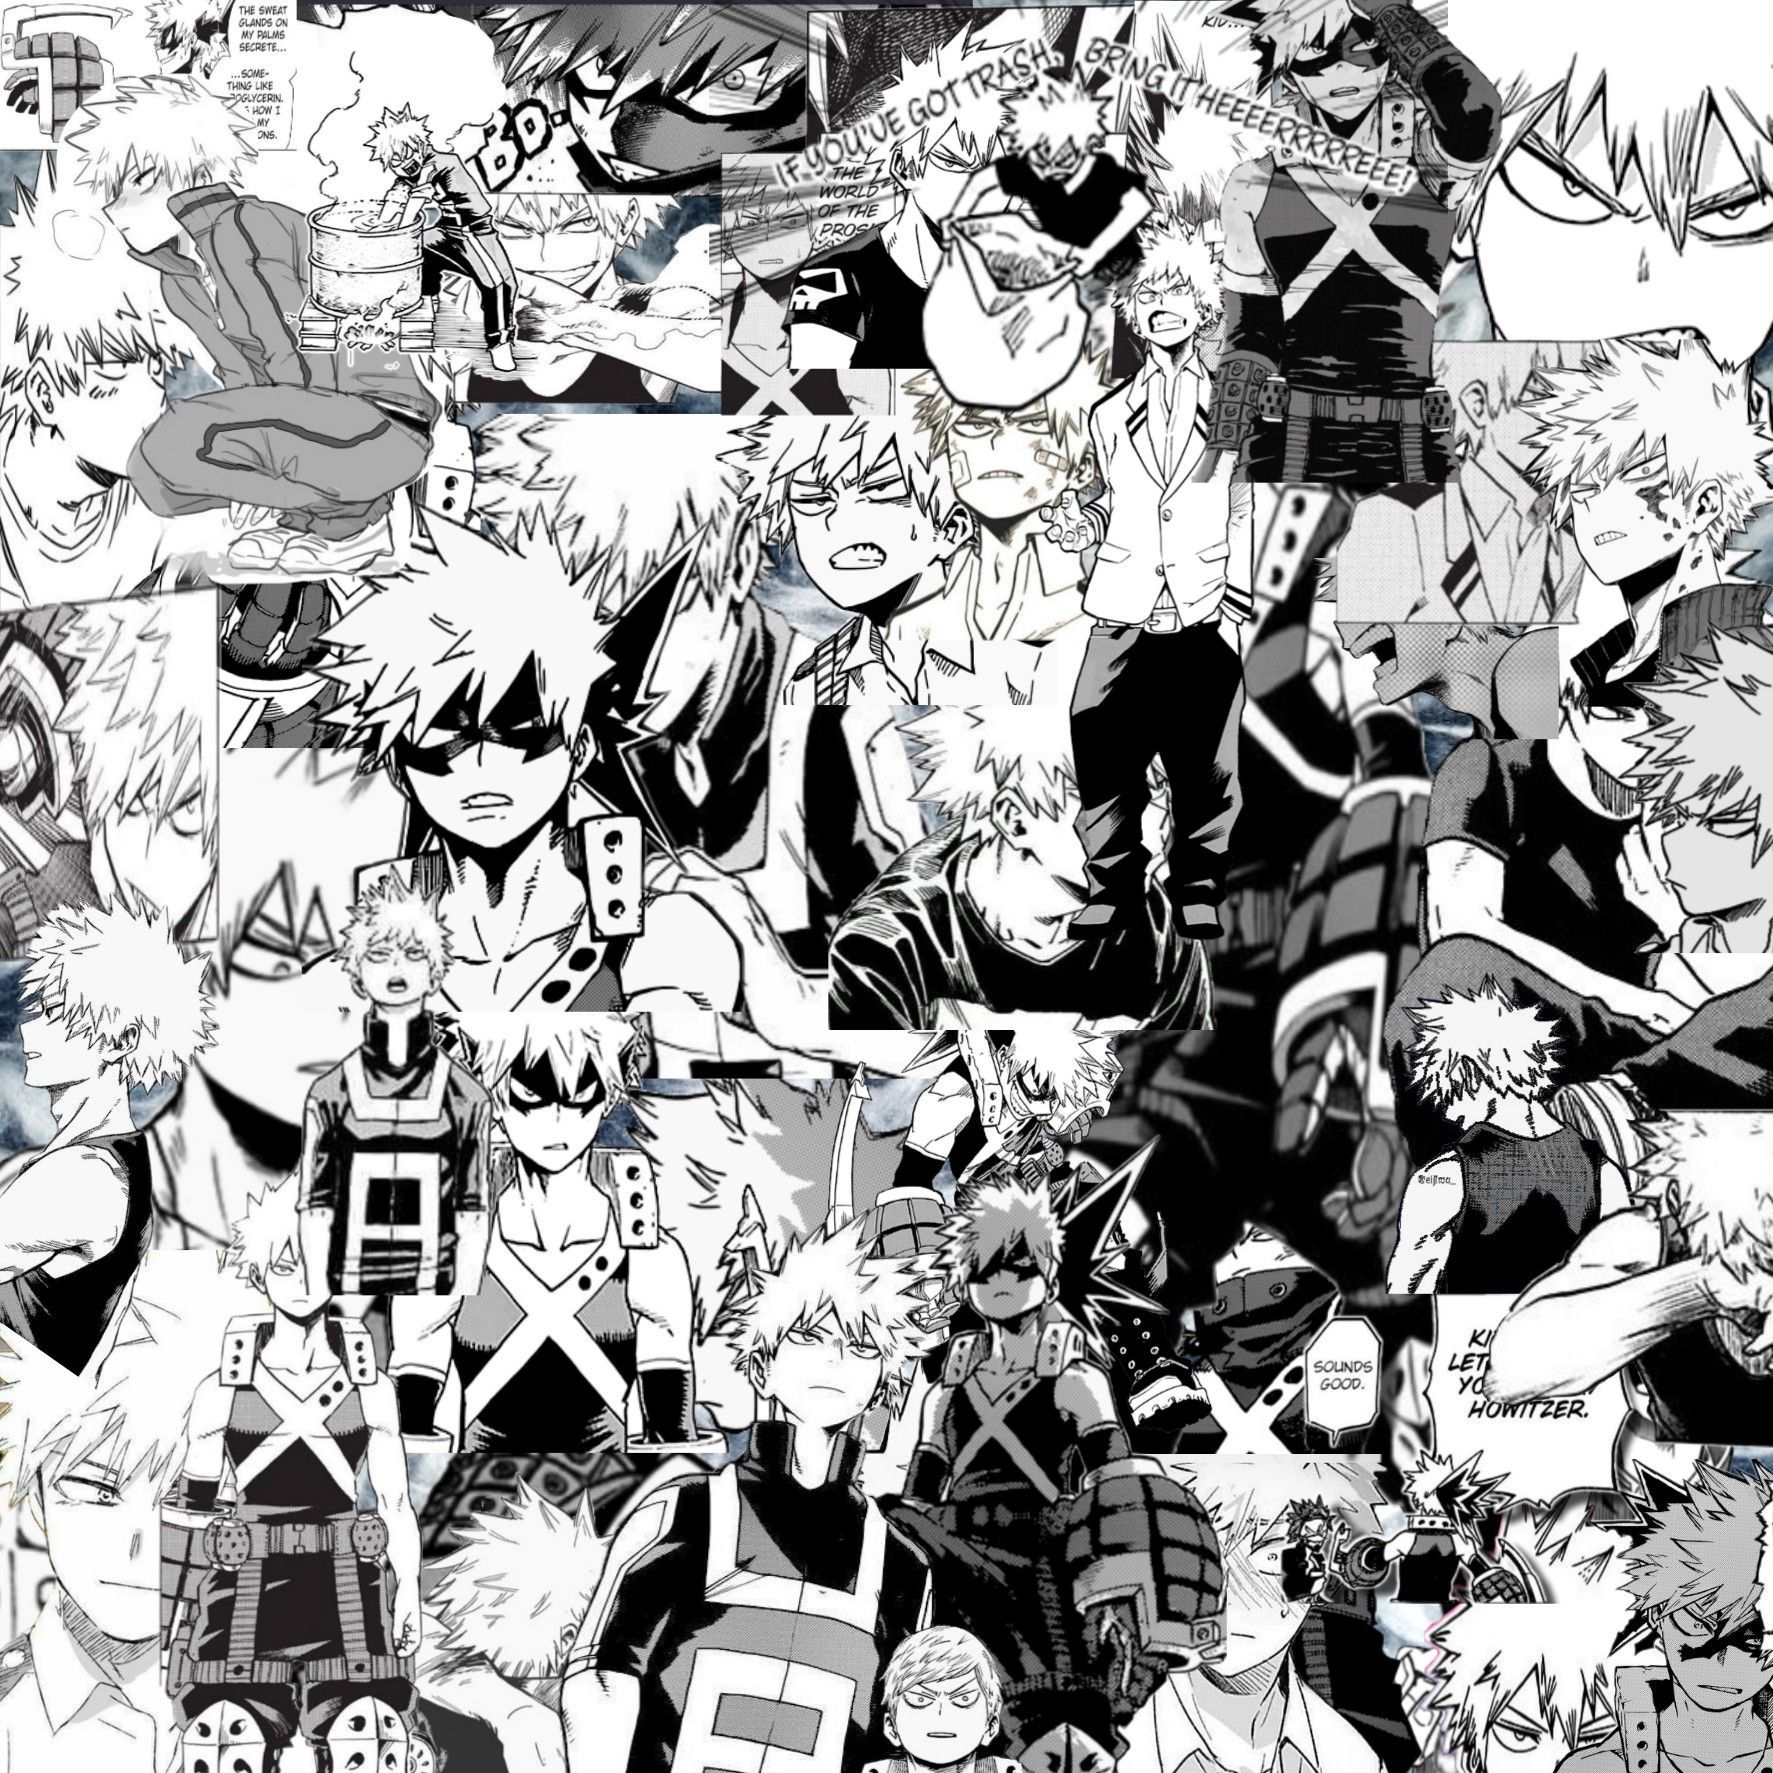 Anime All Manga Wallpapers